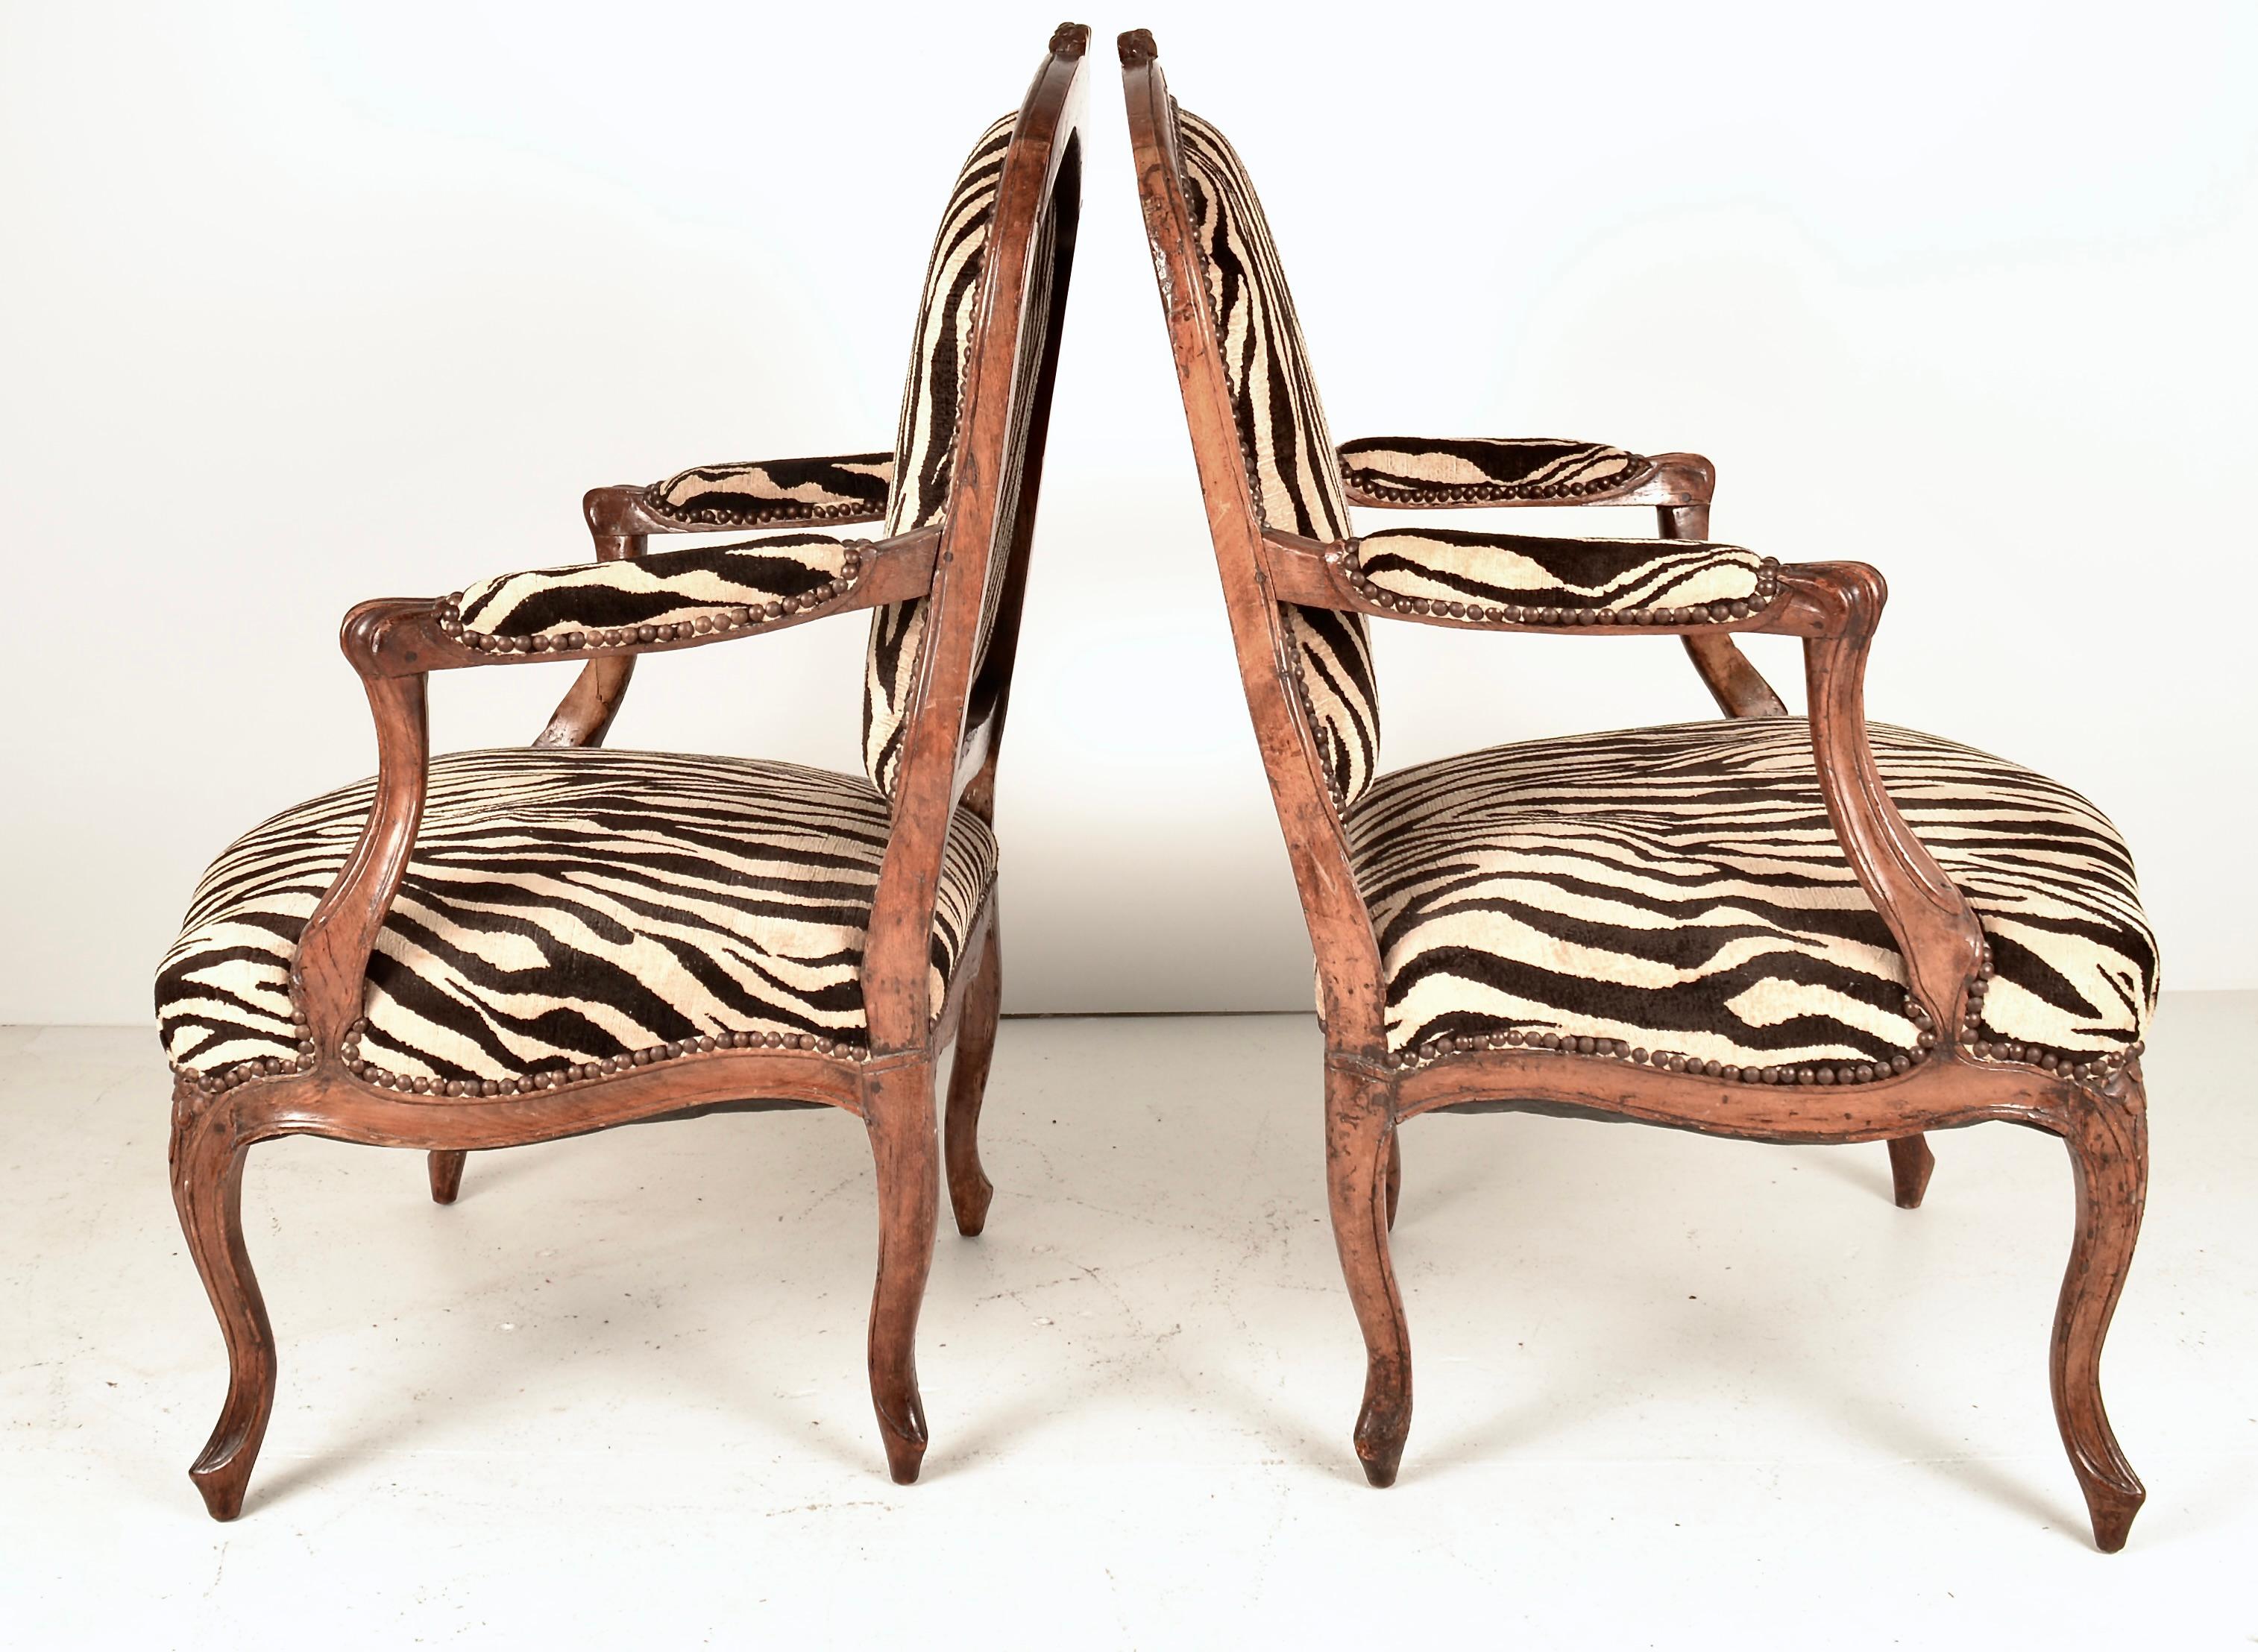 Ein hübsches Paar offener französischer Sessel. Schöne Patina auf handgeschnitzten Obstholzrahmen. Neu bezogen mit einem hochwertigen Jacquardsamt im Zebramuster. Hochwertige, robuste Stühle in sehr gutem Zustand. 